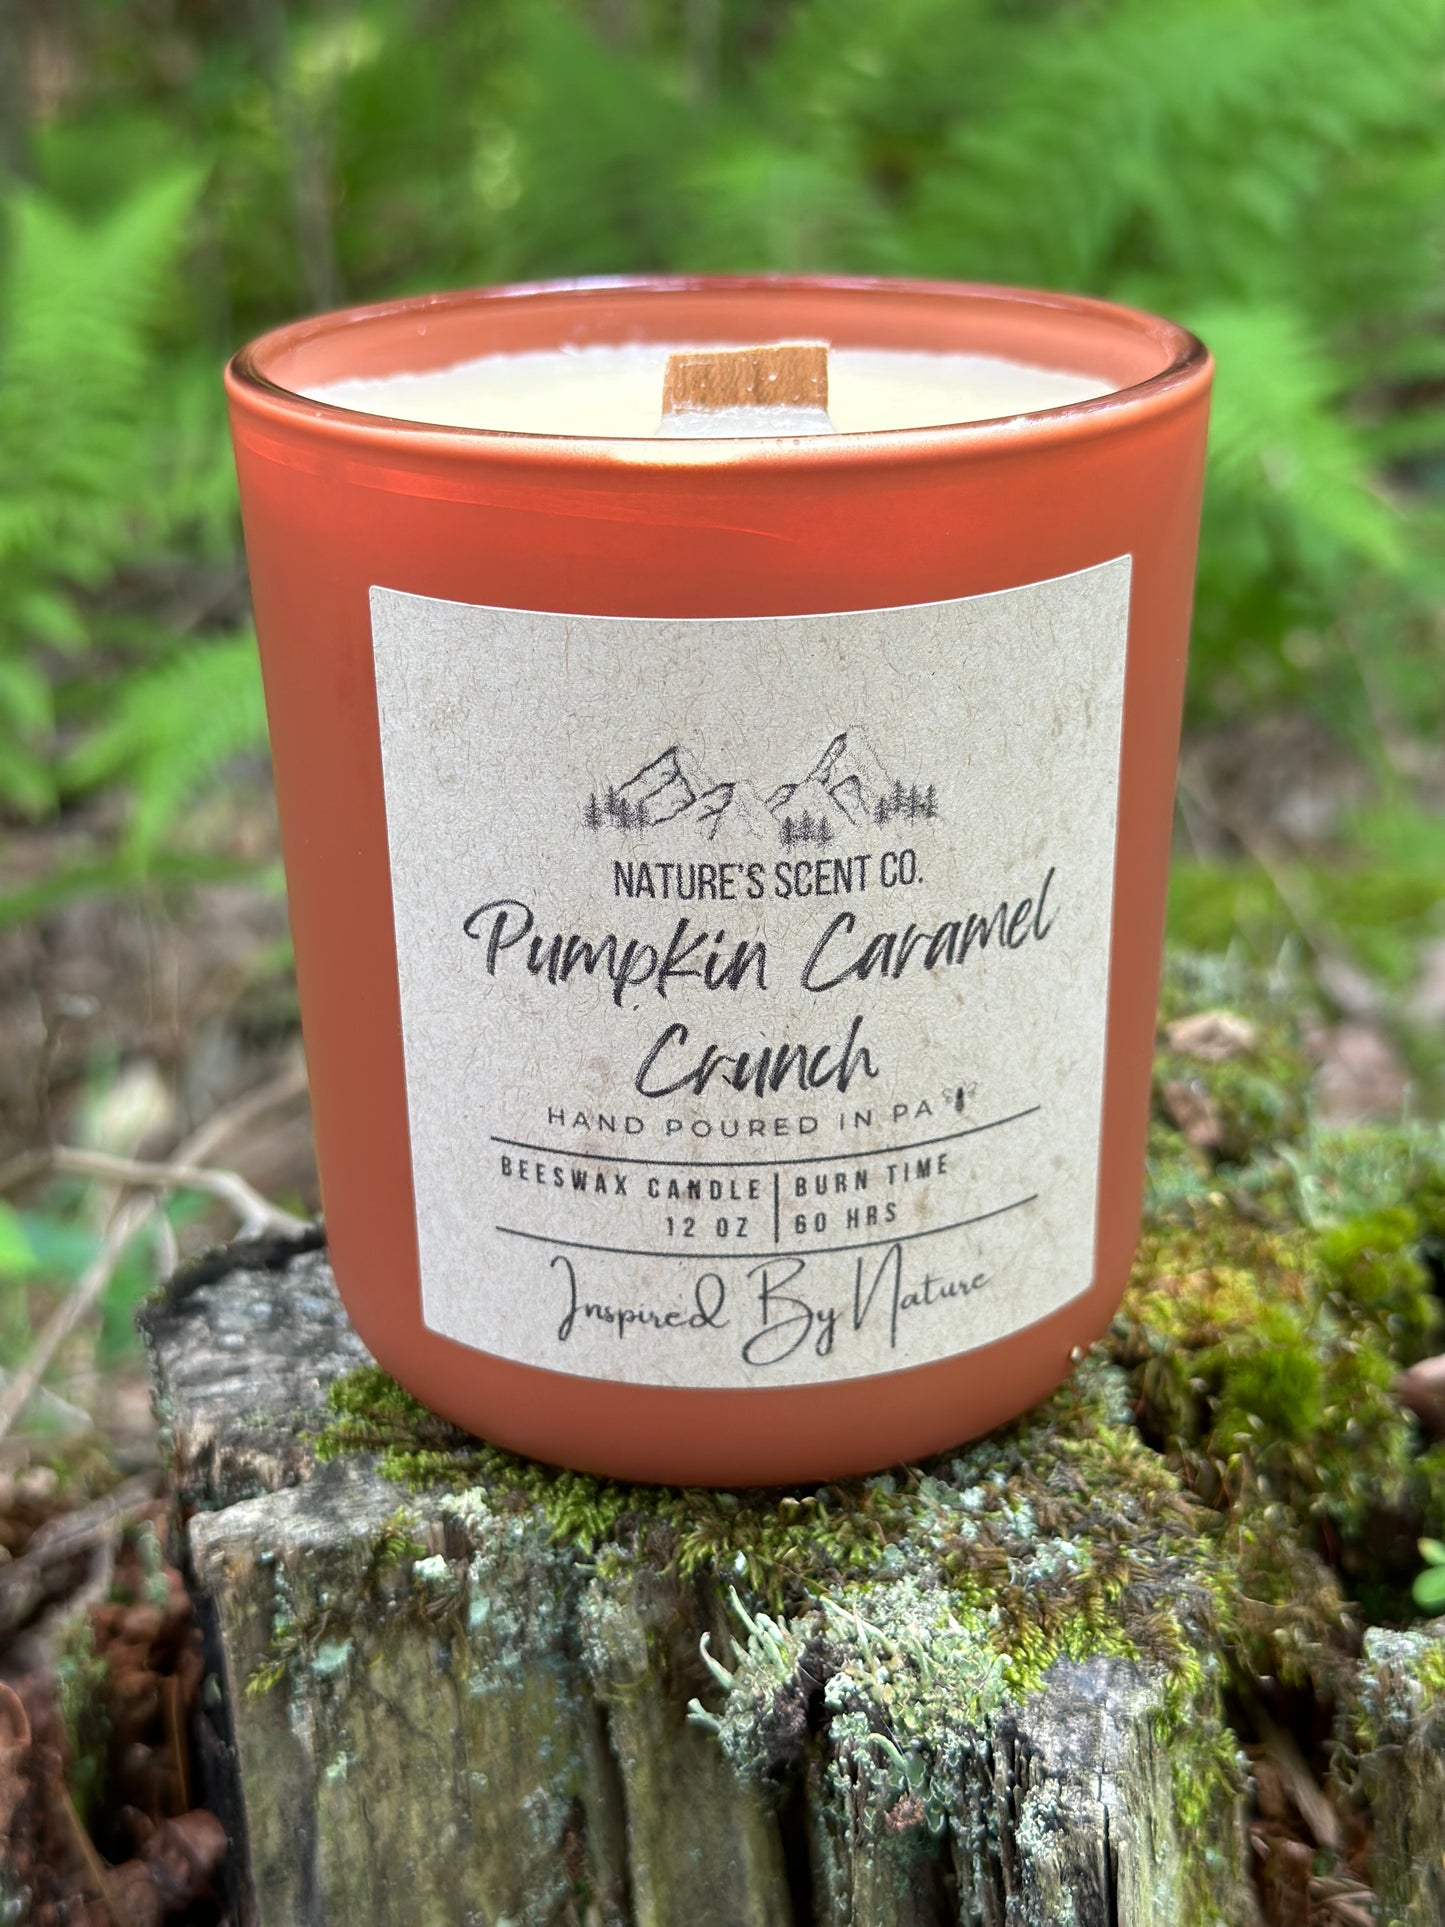 Pumpkin Caramel Crunch Beeswax Candle